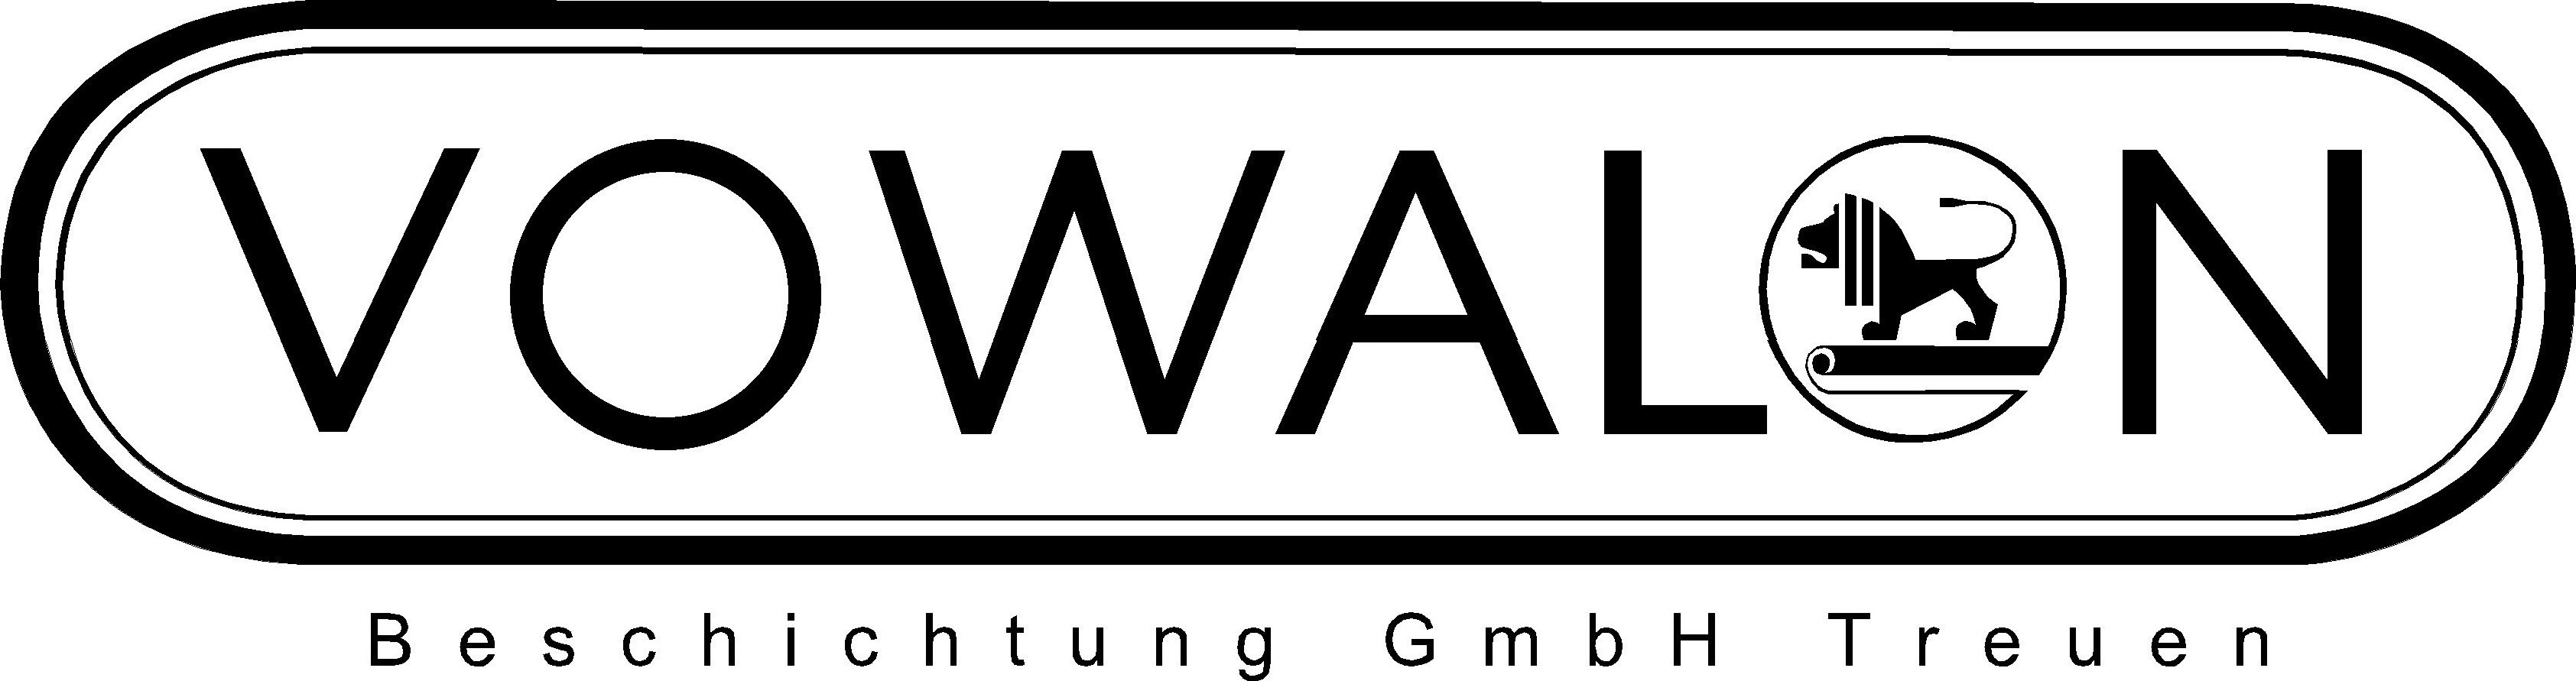 Logo Vowalon Beschichtung GmbH Treuen